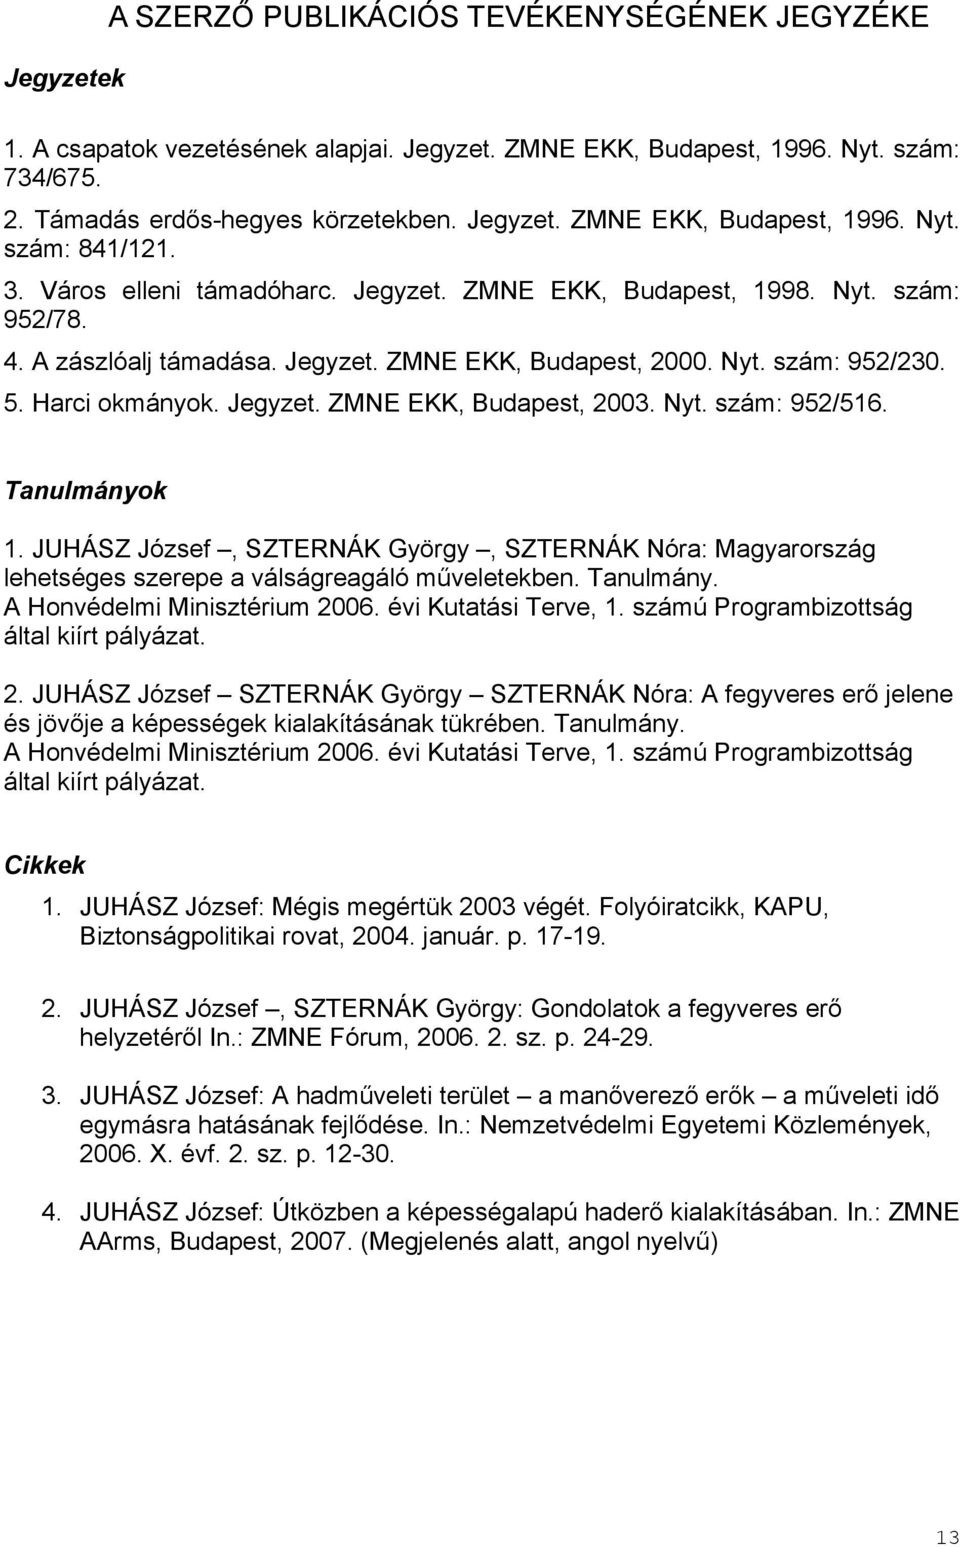 Nyt. szám: 952/516. Tanulmányok 1. JUHÁSZ József, SZTERNÁK György, SZTERNÁK Nóra: Magyarország lehetséges szerepe a válságreagáló műveletekben. Tanulmány. A Honvédelmi Minisztérium 2006.